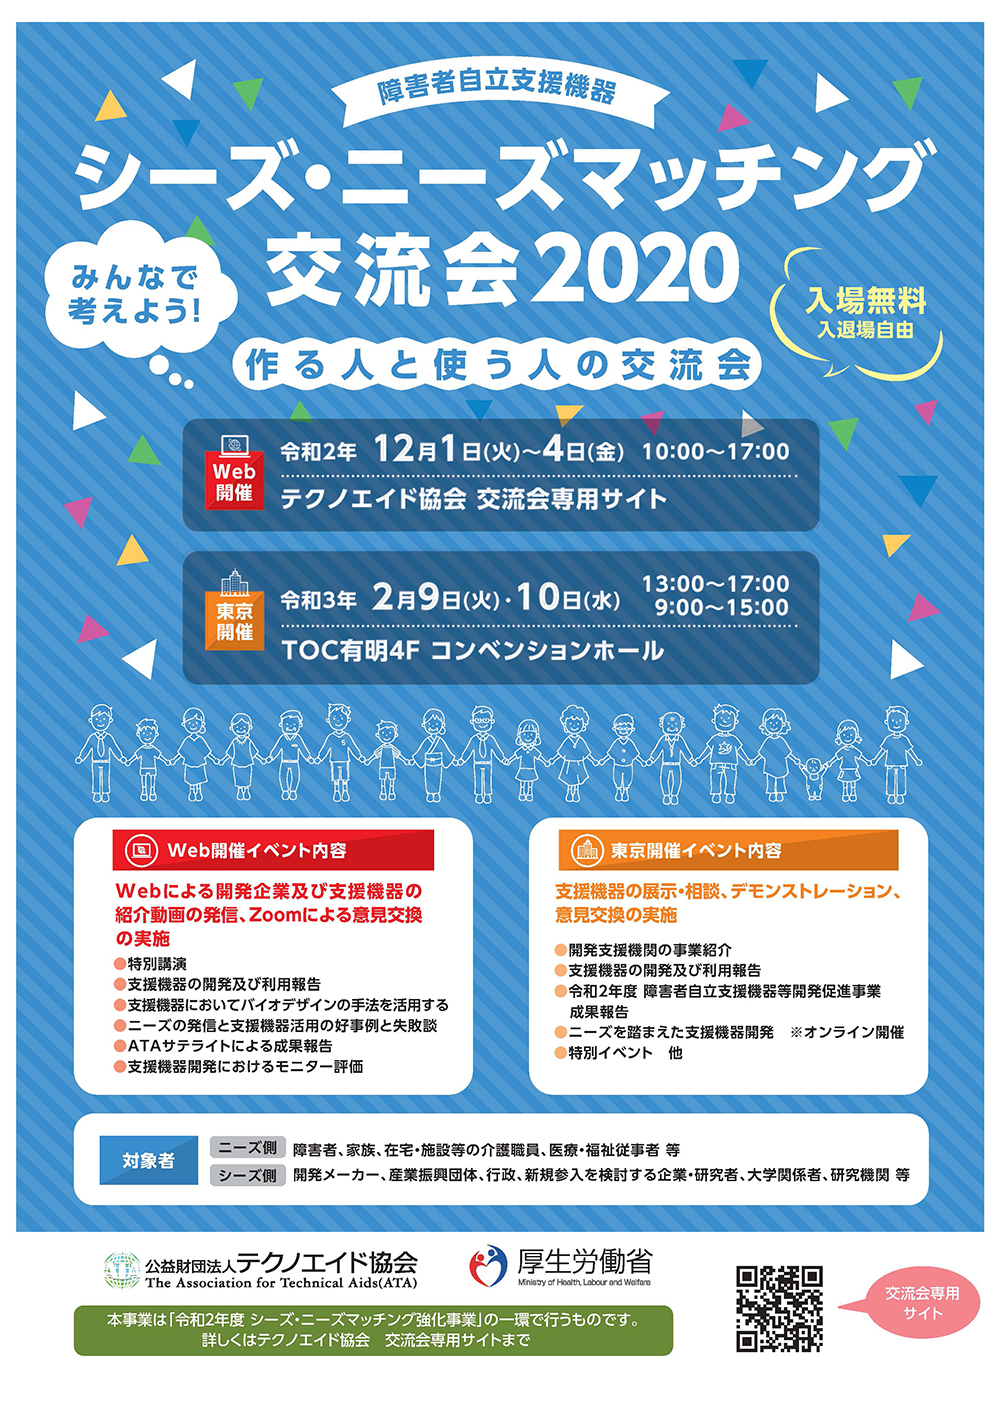 シーズ・ニーズマッチング交流会2020